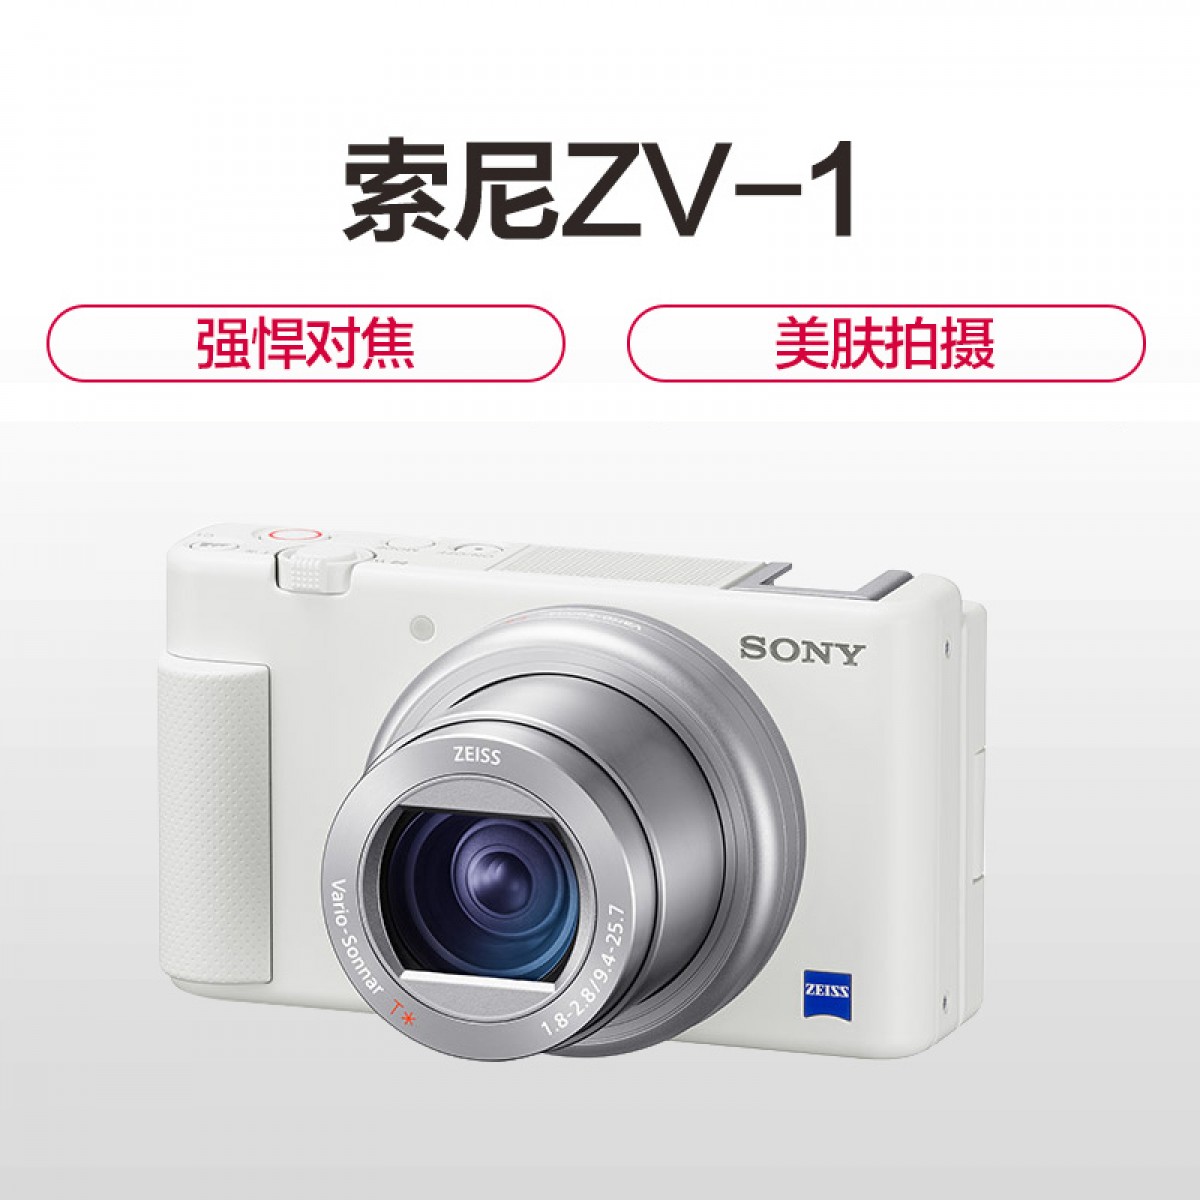 Sony/索尼 ZV-1 Vlog数码相机 4K视频 美肤拍摄 强悍对焦直播性能